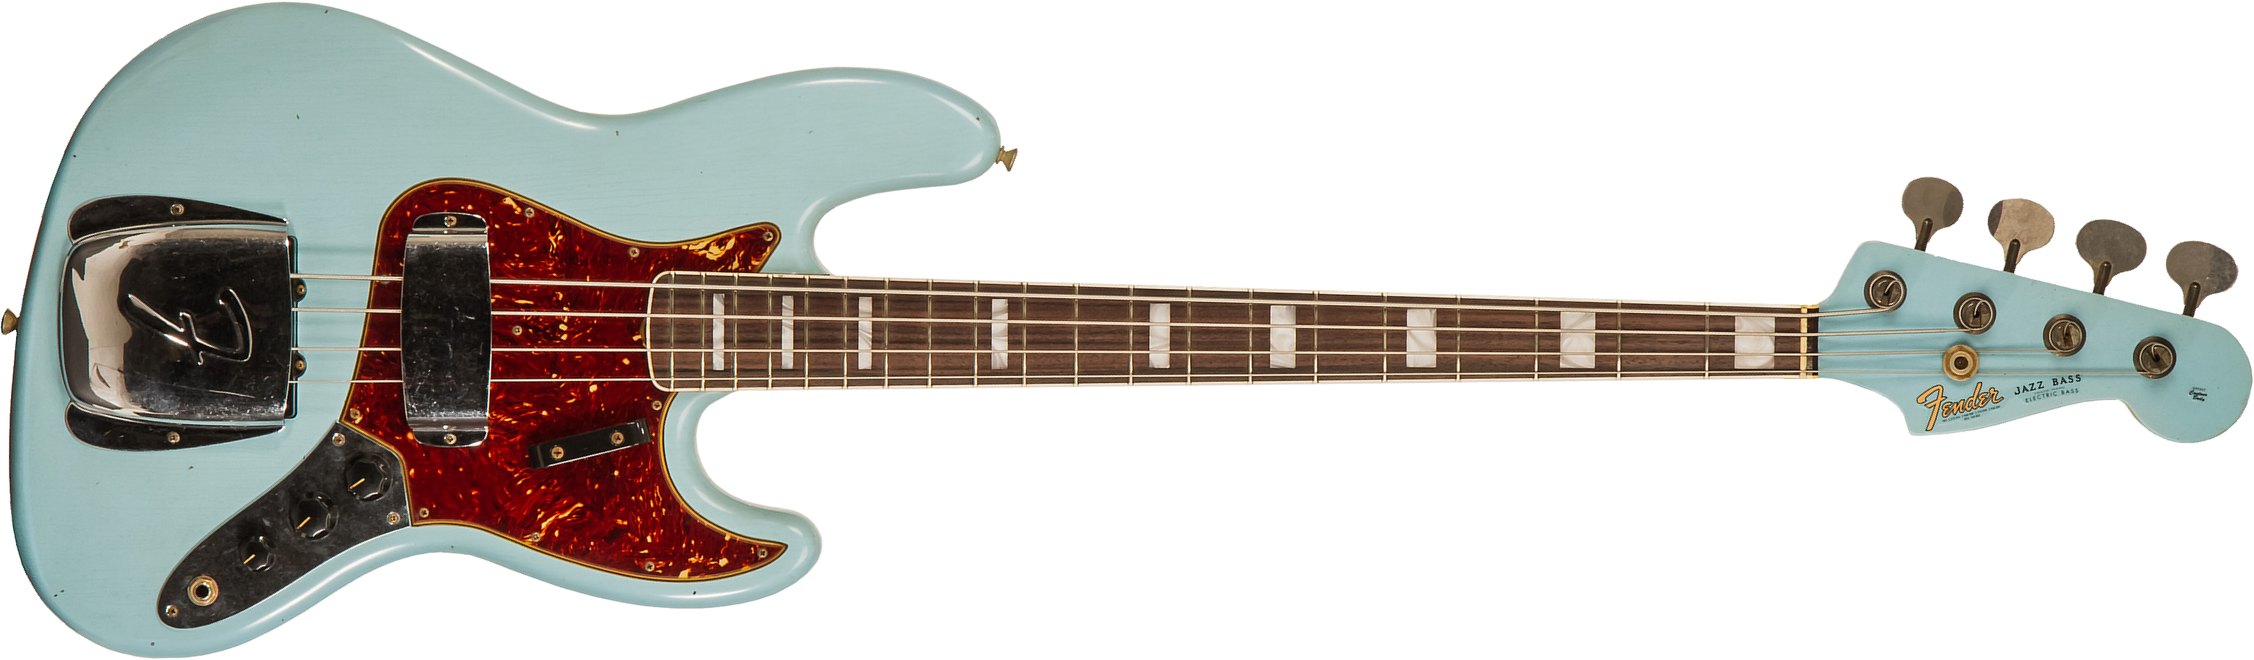 Fender Custom Shop Jazz Bass 1966 Rw #cz553892 - Journeyman Relic Daphne Blue - Basse Électrique Solid Body - Main picture